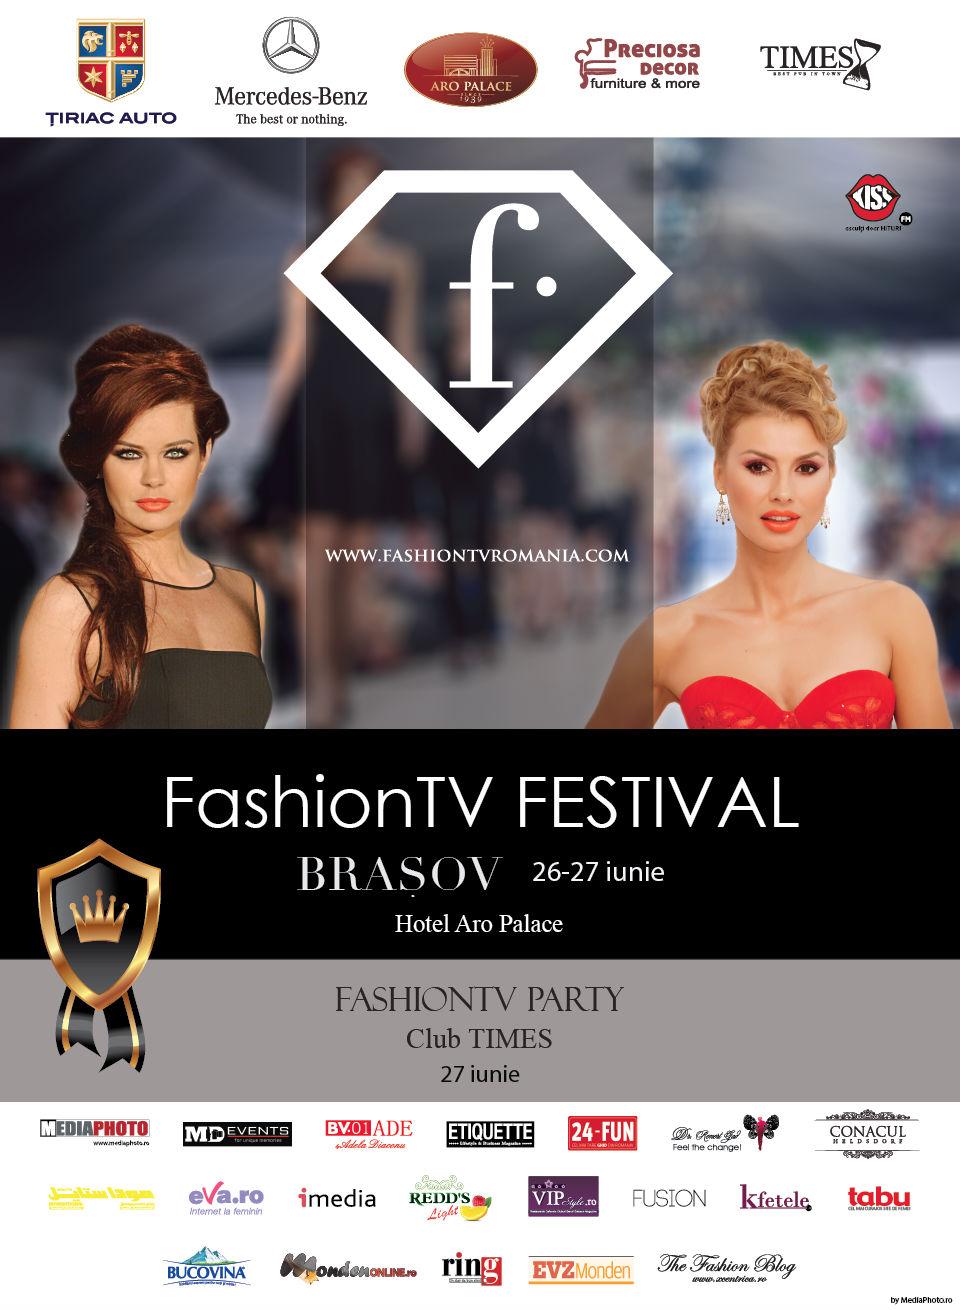 Festivalul FashionTV, de la Braşov, adună cei mai tari creatori de modă din lume! Femei frumoase, distracţie şi modă